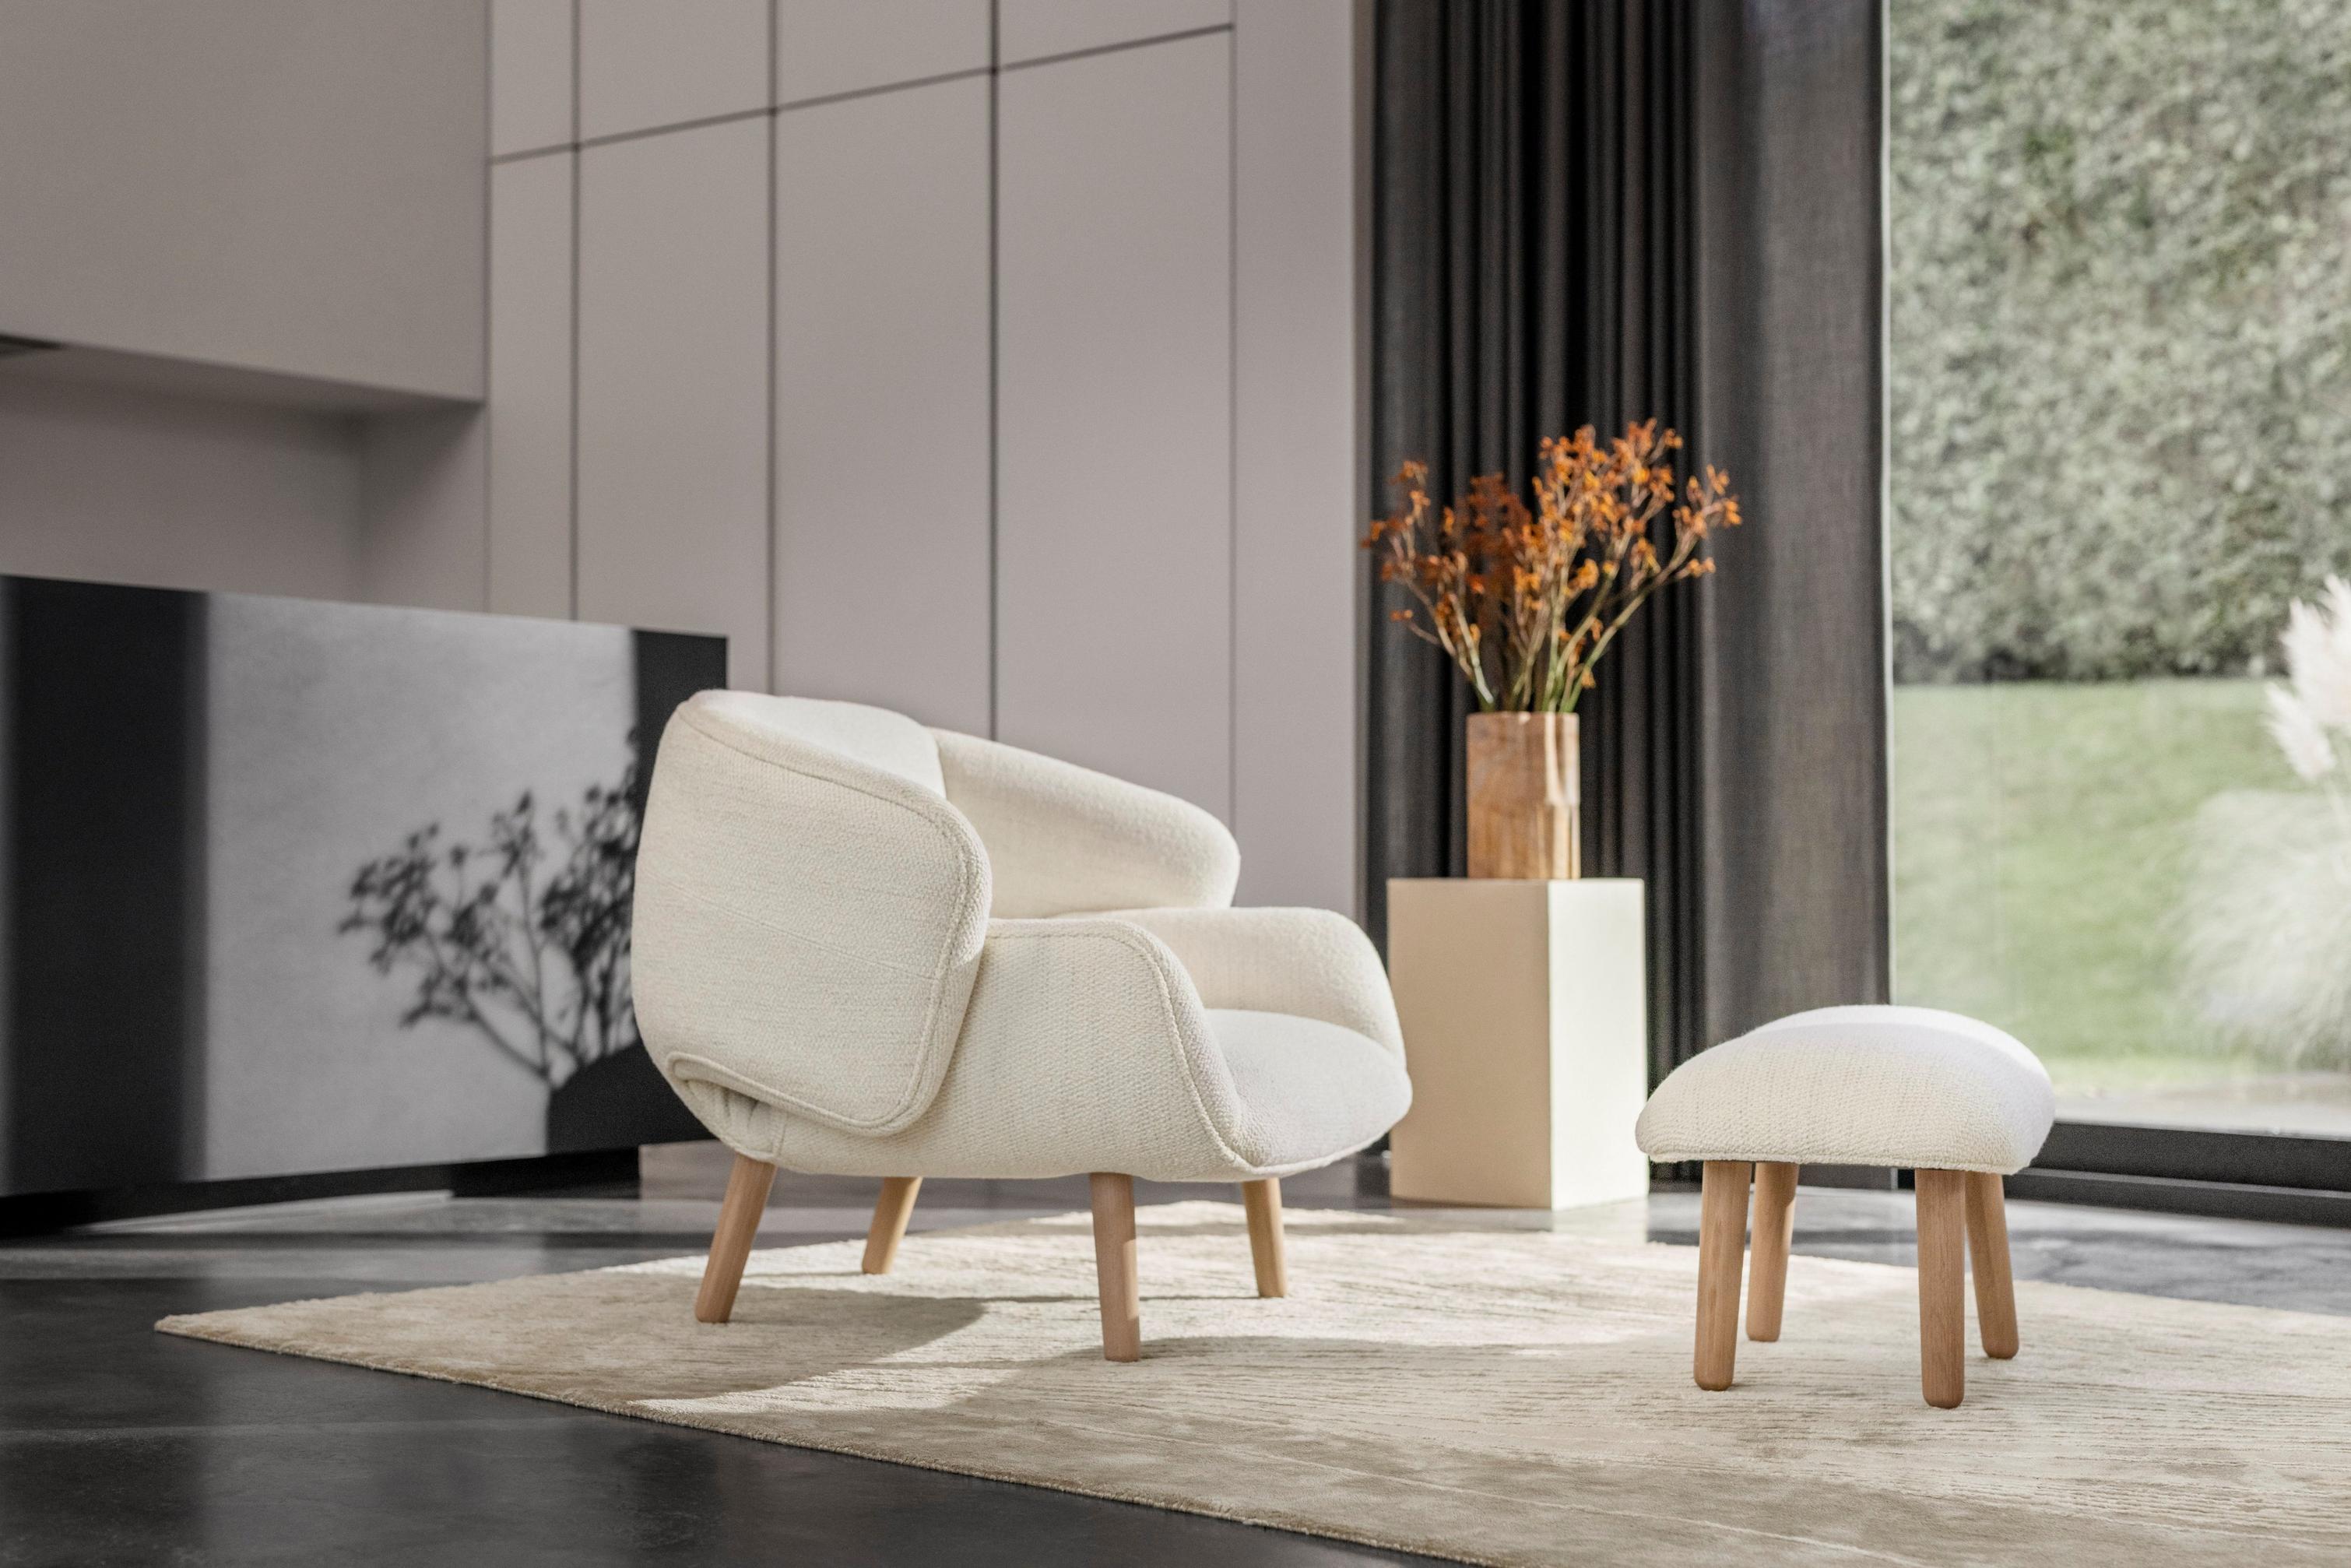 Светлая гостиная с креслом Fusion с обивкой из ткани Lazio белого цвета и подставкой для ног в тон.